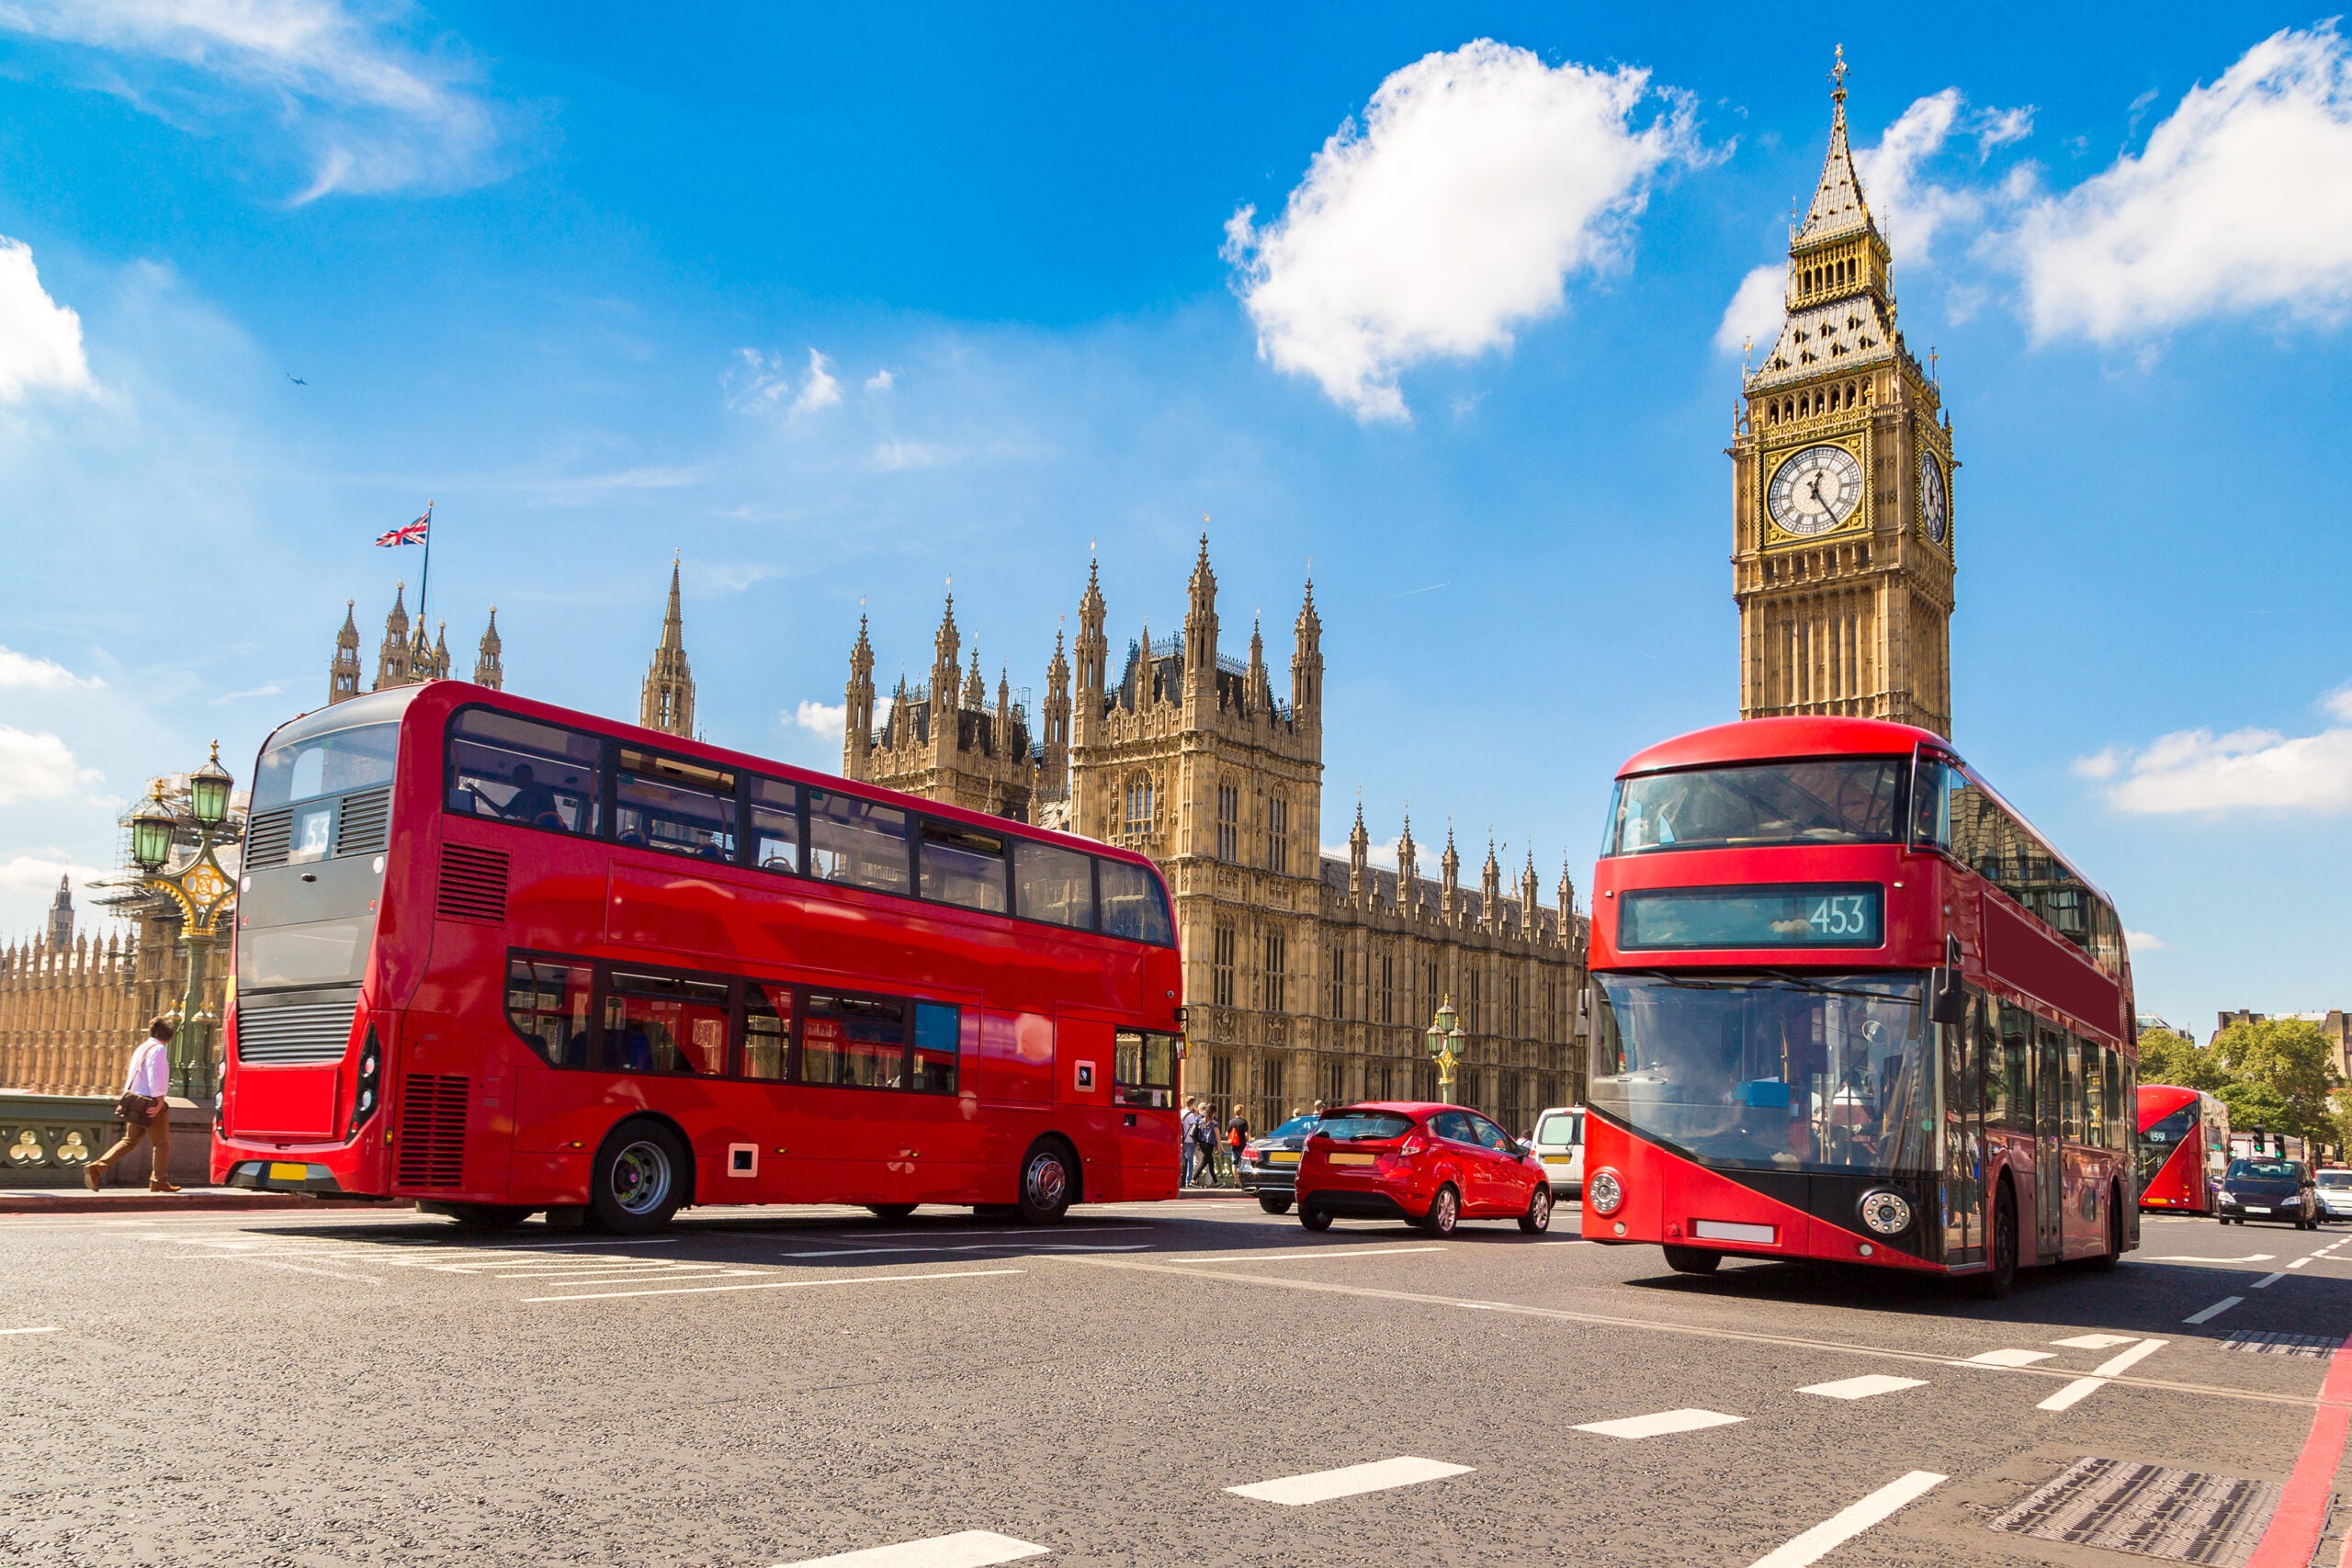 Big Ben, Double decker buses in London